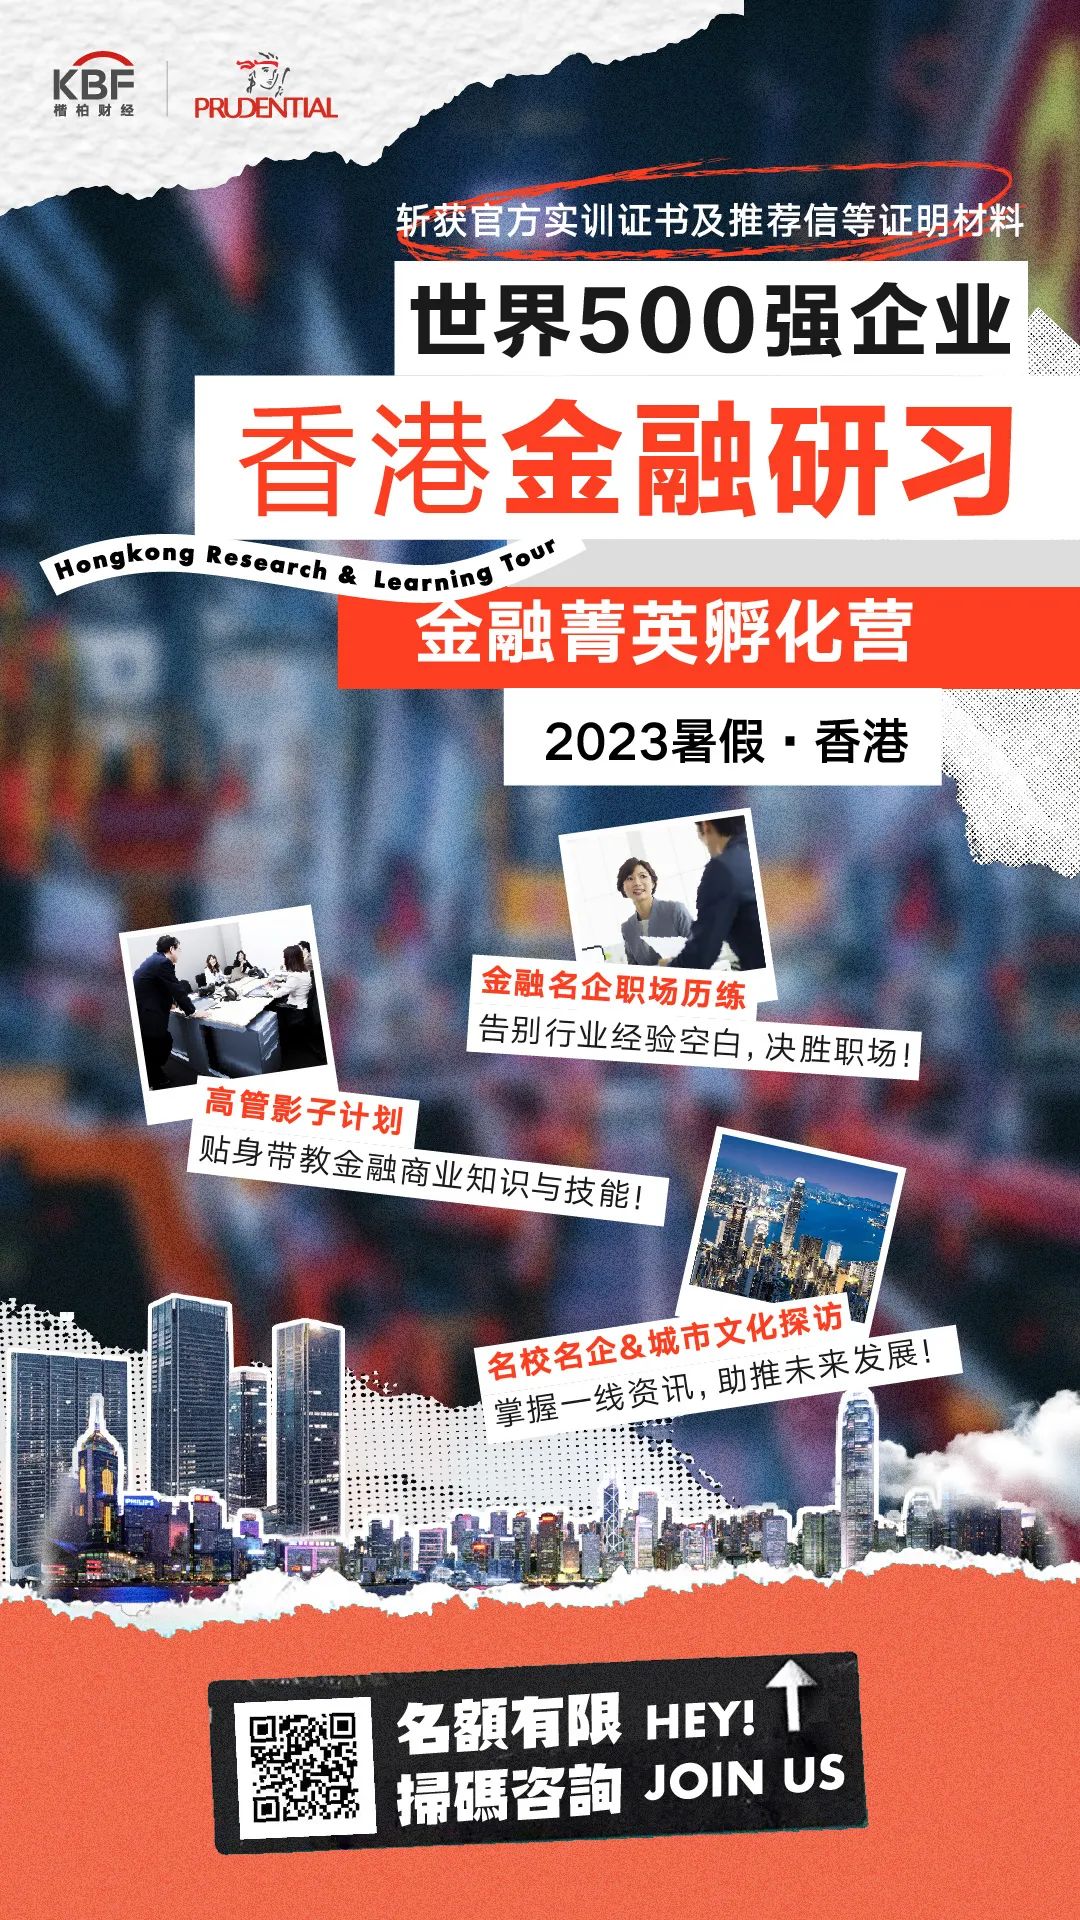 下一站，香港！世界500强金融研习，get官方证书+推荐信，决胜未来职场！2